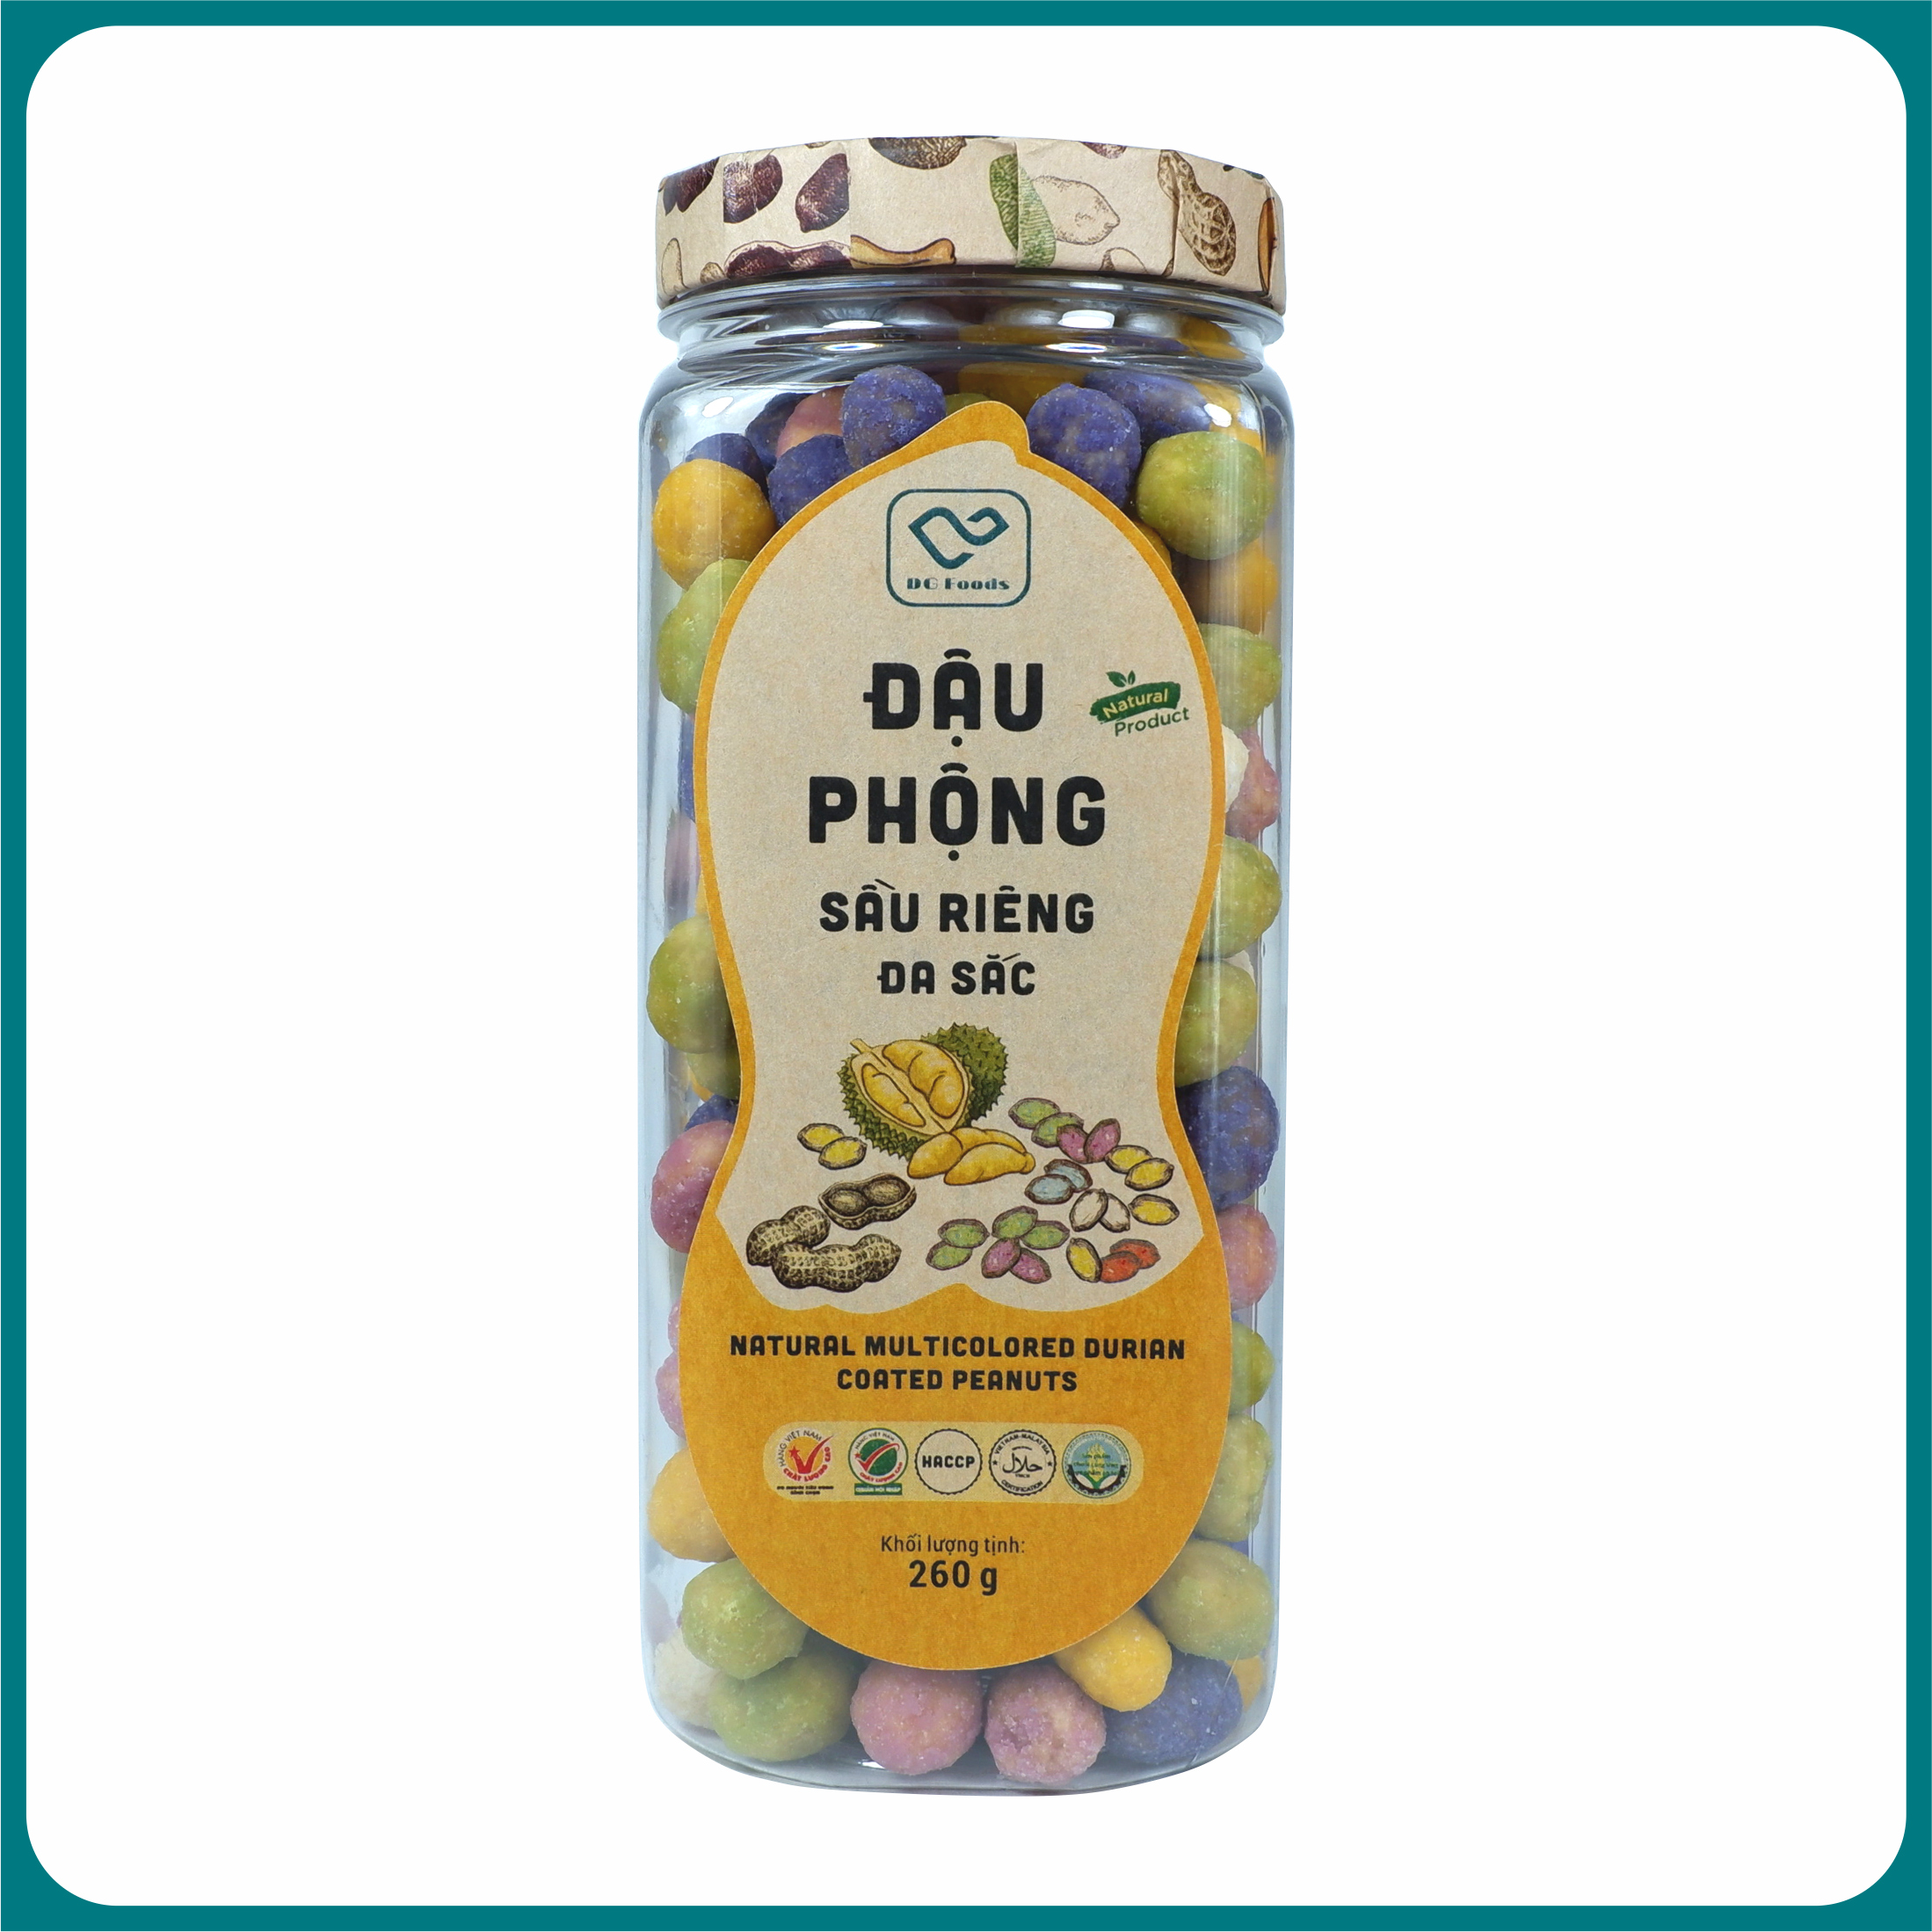 Đậu Phộng Sầu Riêng đa sắc DGfoods 250g/ Natural multicolored durian coated peanuts/ HVNCLC, Haccp, Halal, Ăn chay, Ăn kiêng, Đặc sản Cần Thơ